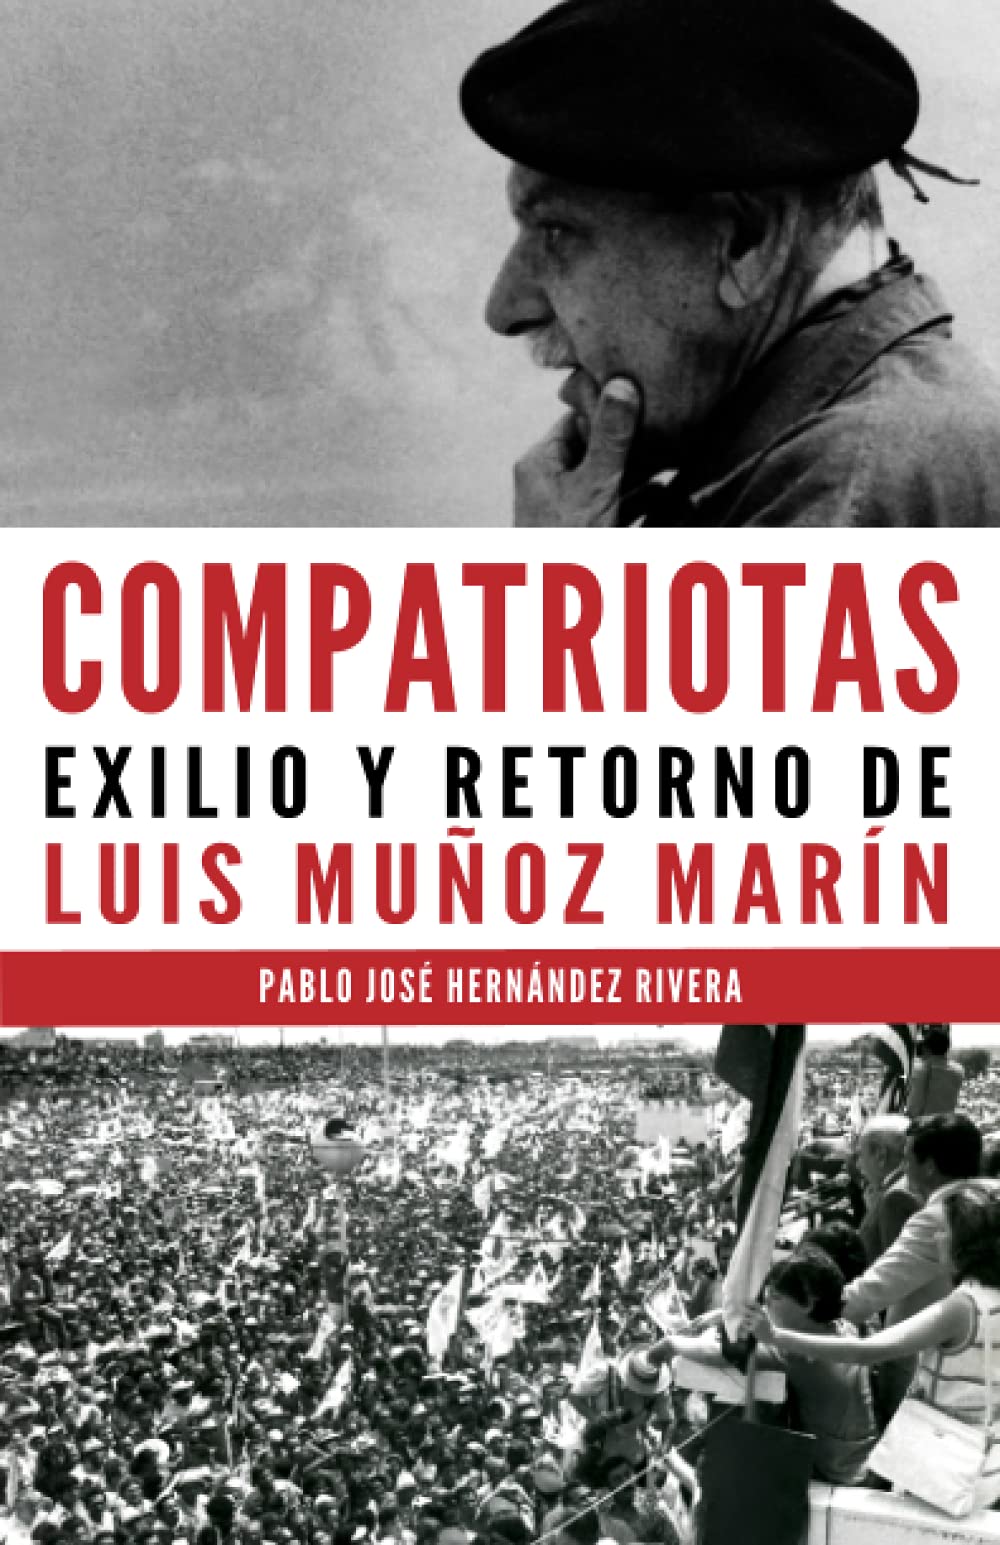 COMPATRIOTAS EXILIO Y RETORNO DE LUIS MUÑOZ MARÍN - Pablo José Hernández Rivera